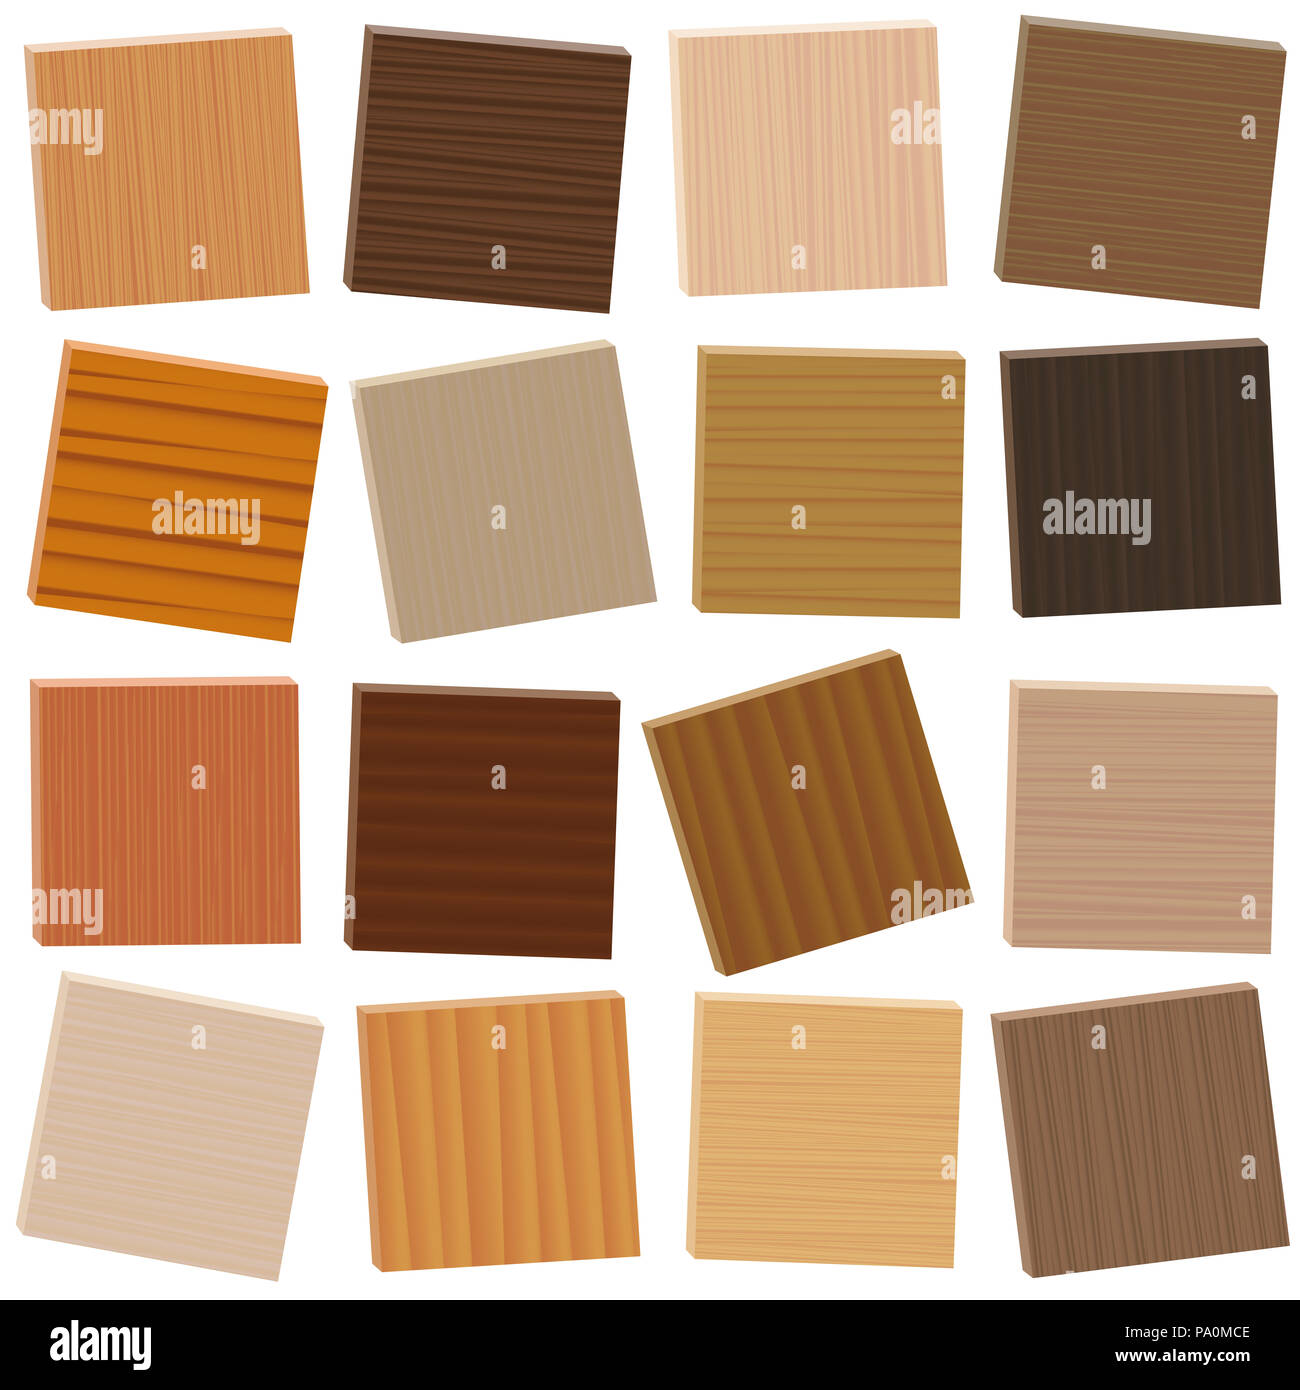 Las muestras de madera. Tipos parquetry Vagamente organizado. Placas de madera con diferentes colores, esmaltes, texturas de diversas especies de árboles para elegir. Foto de stock